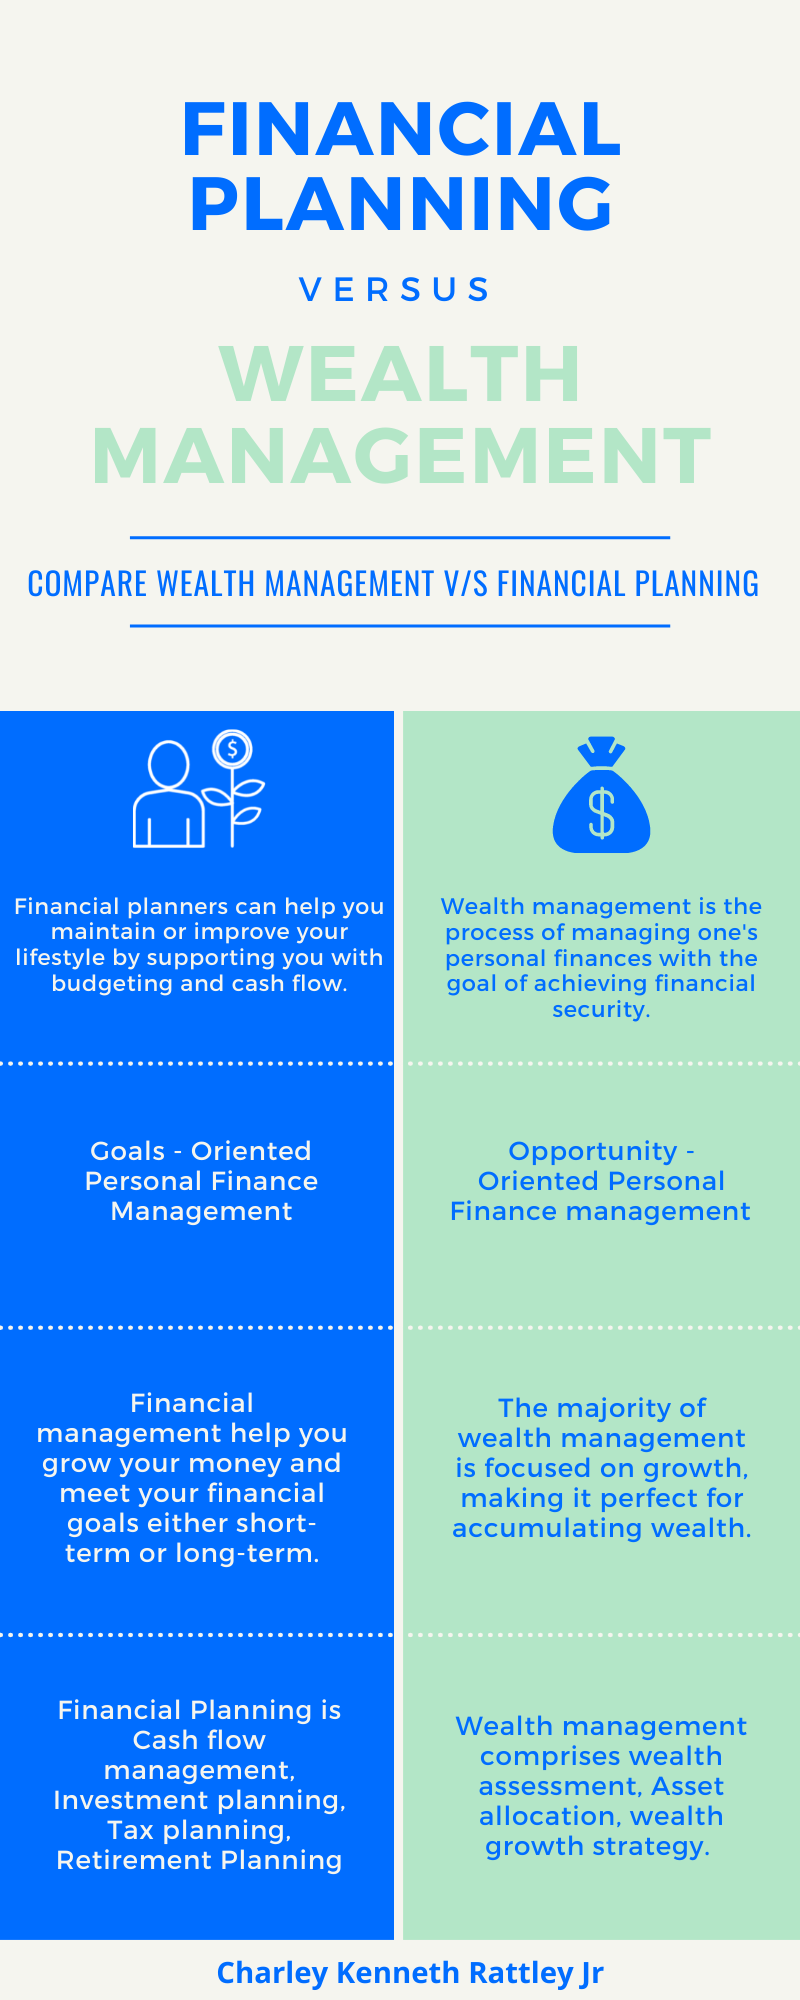 Charles Kenneth Rattley Jr: Financial Management vs Wealth Management